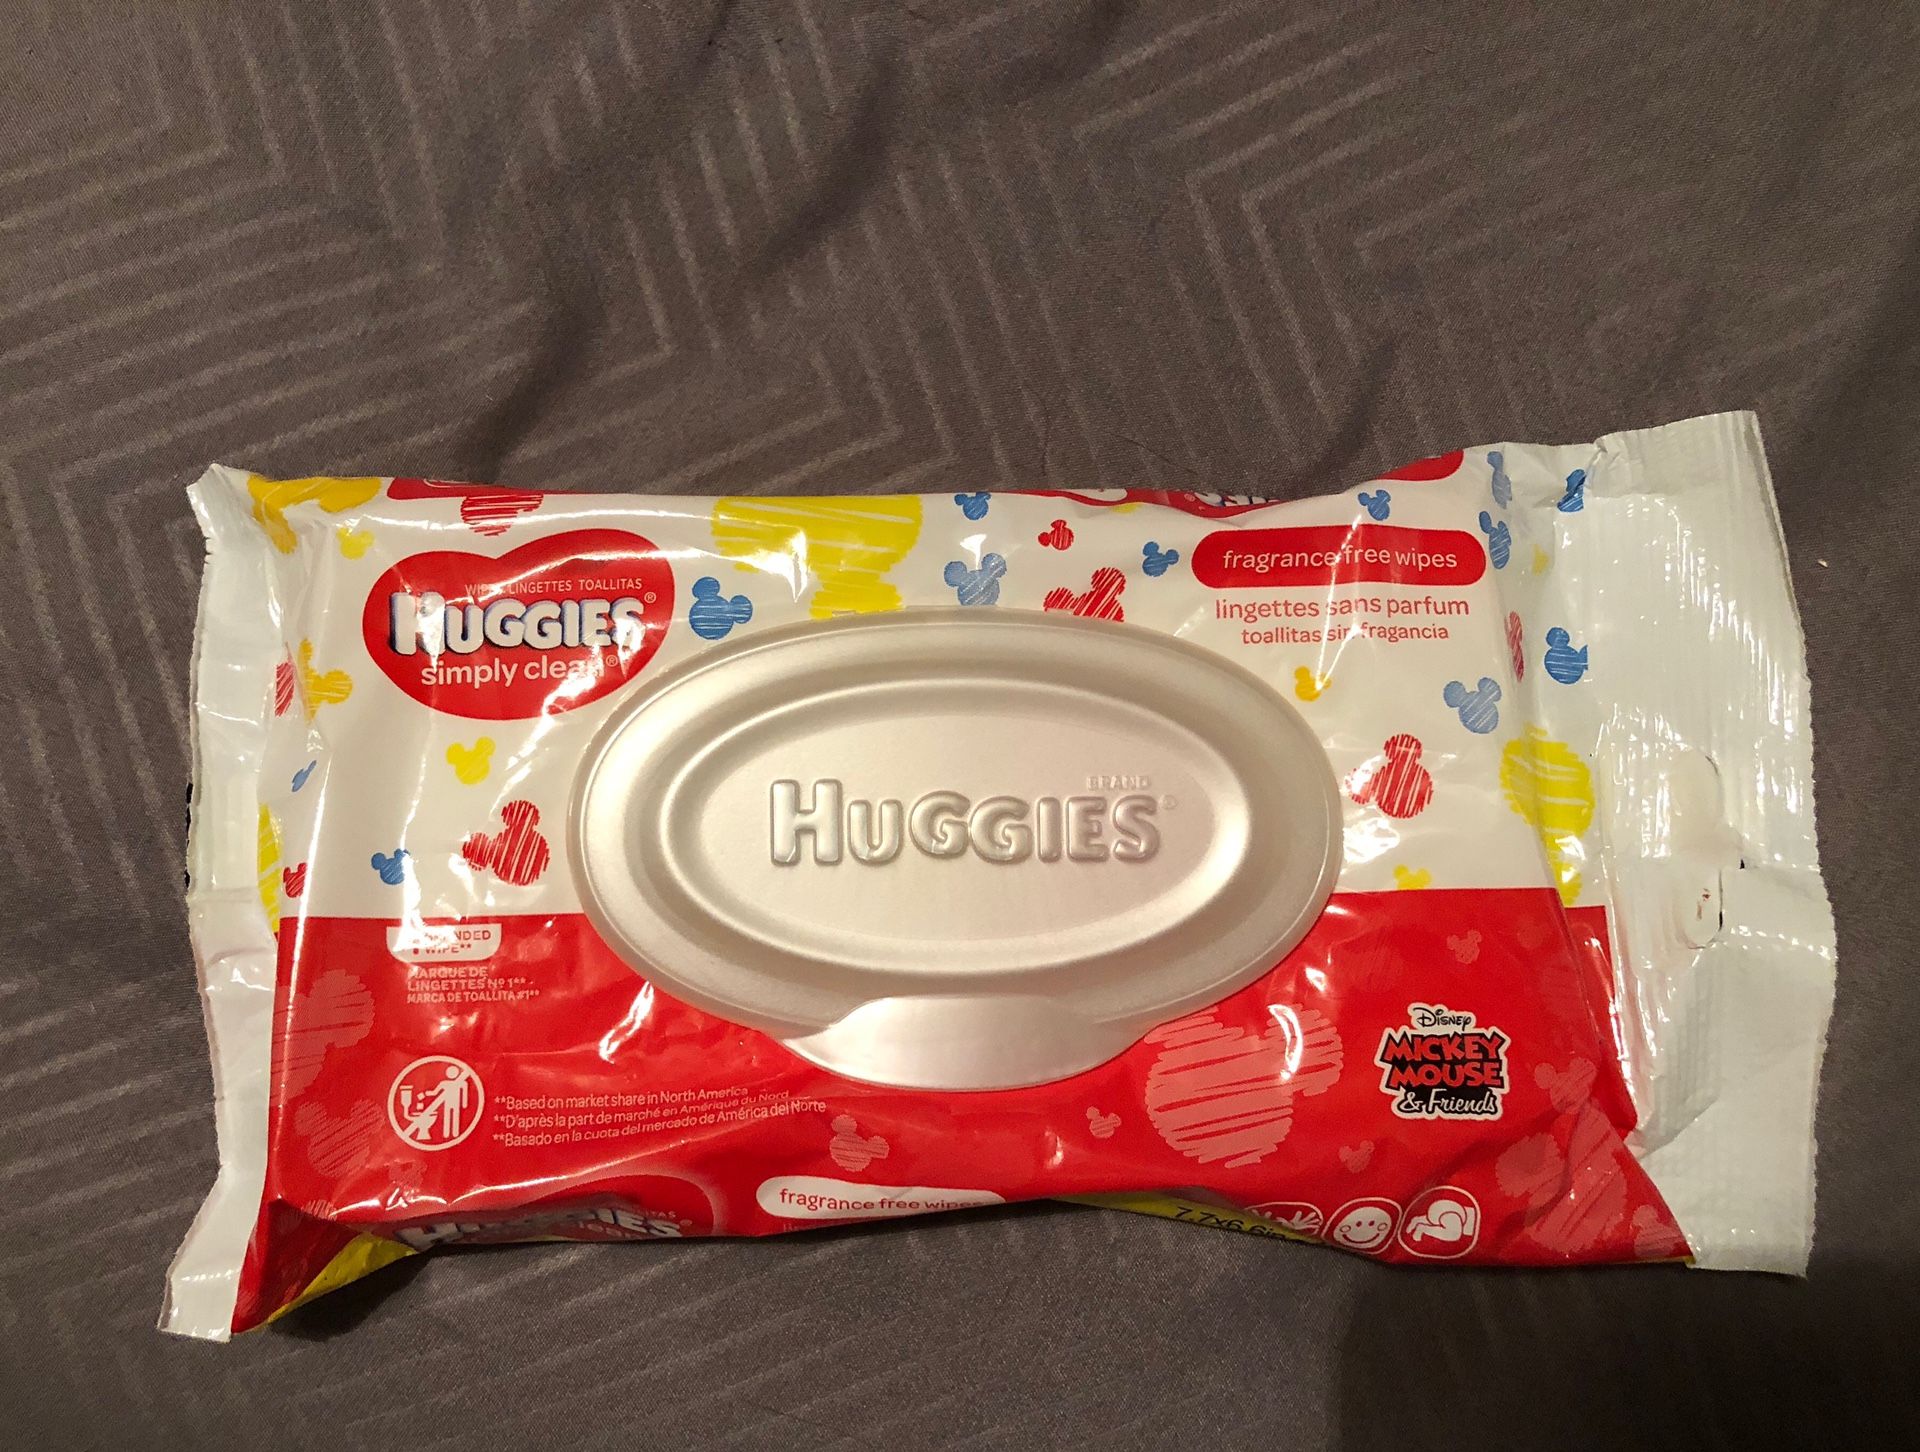 $1 - Huggies simply clean wipes - 1 pack